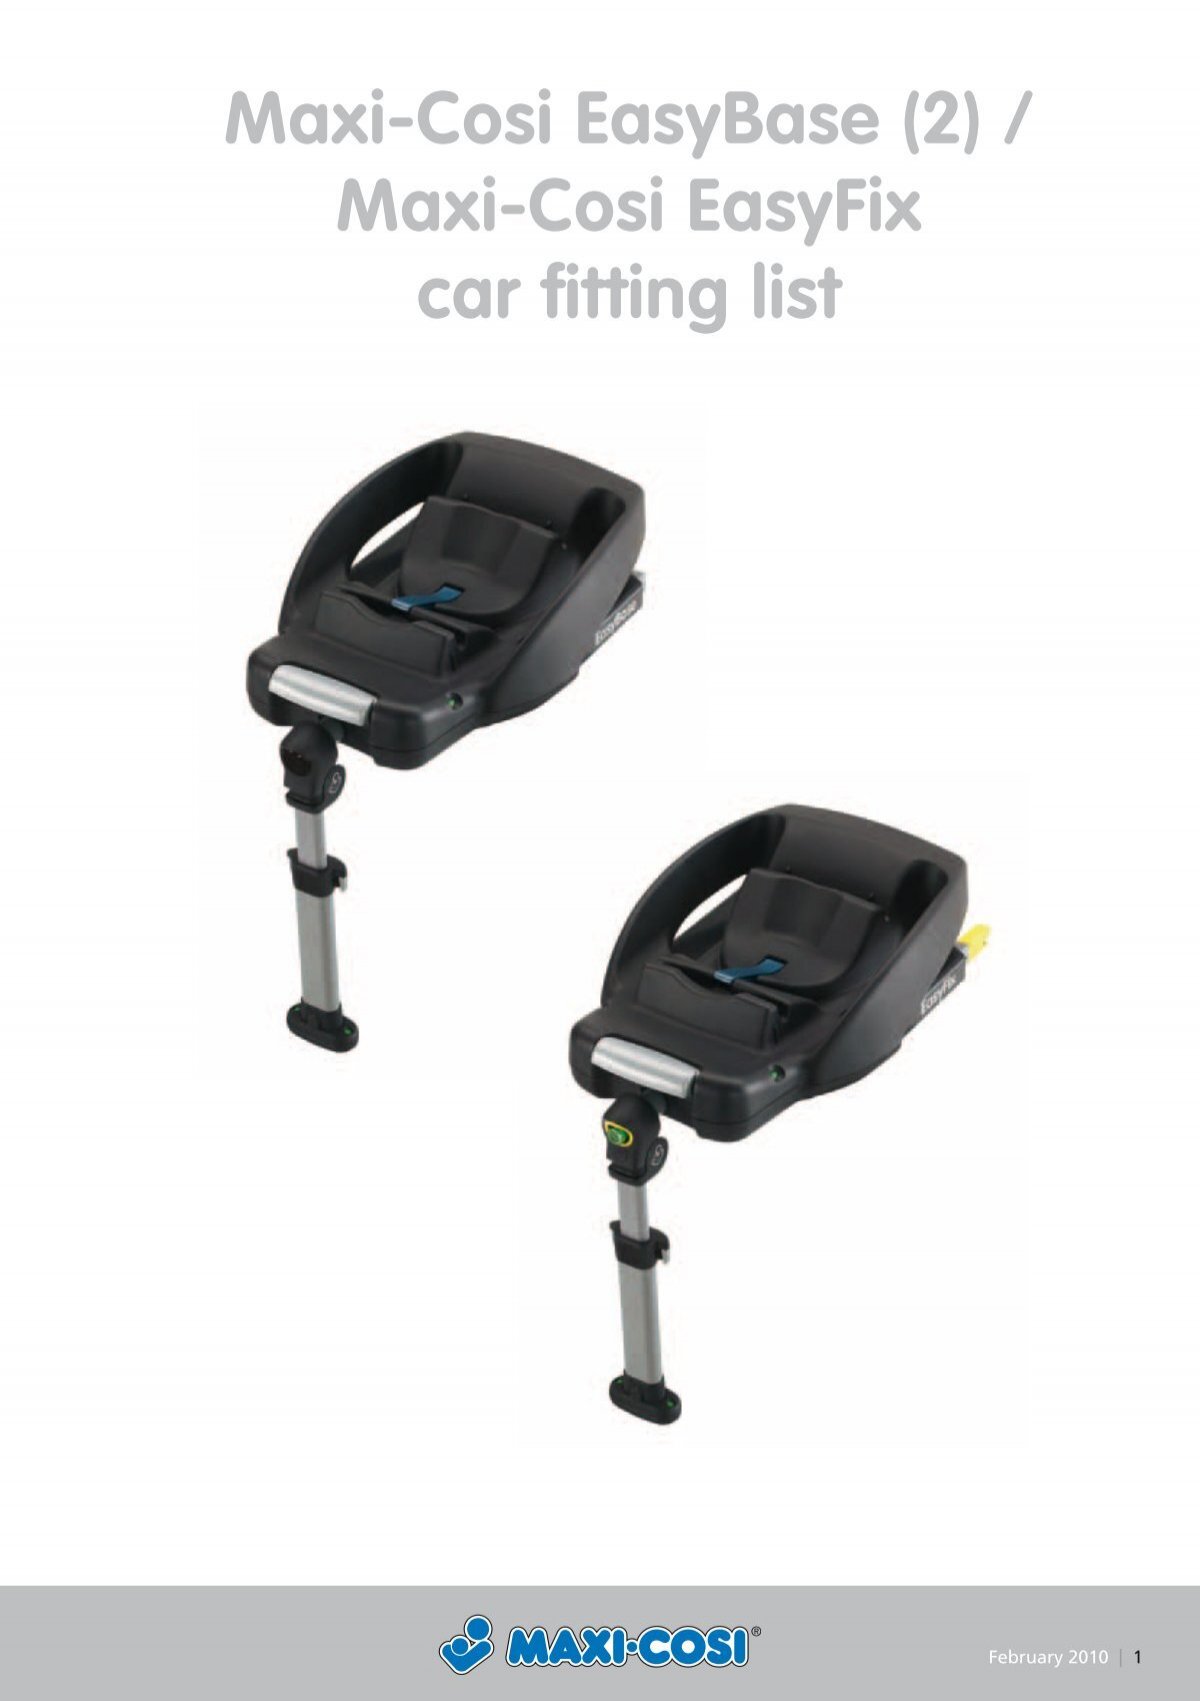 G Houden opschorten Maxi-Cosi Easybase (2) / Maxi-Cosi Easyfix car fitting list